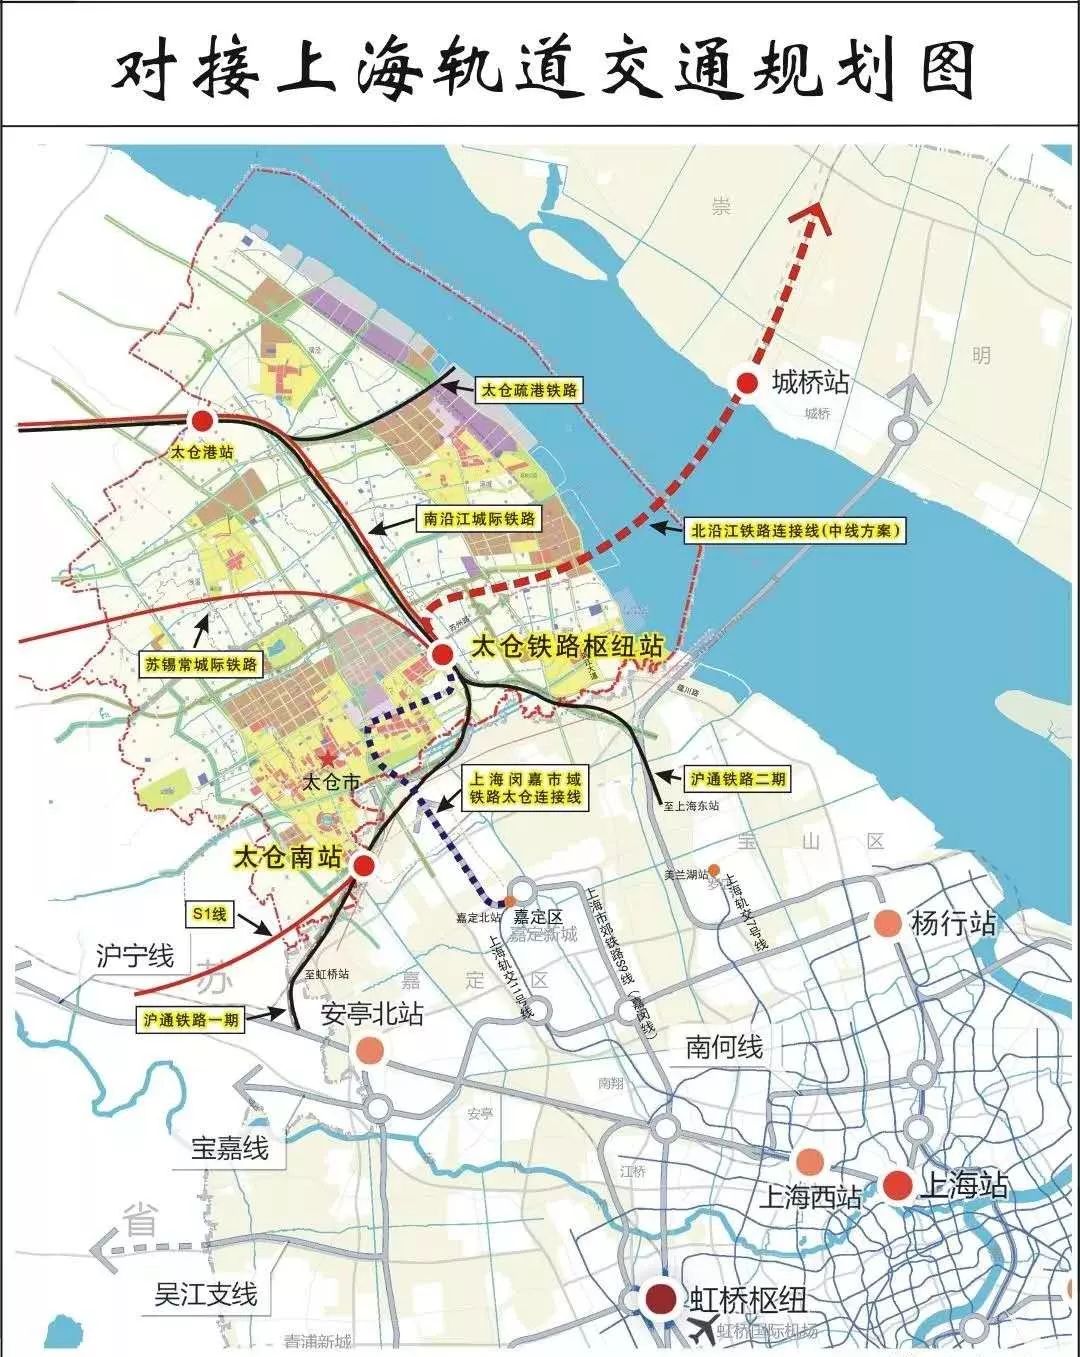 与上海嘉定交通项目建设推进会"的会议内容,其中涉及嘉闵线的规划改动